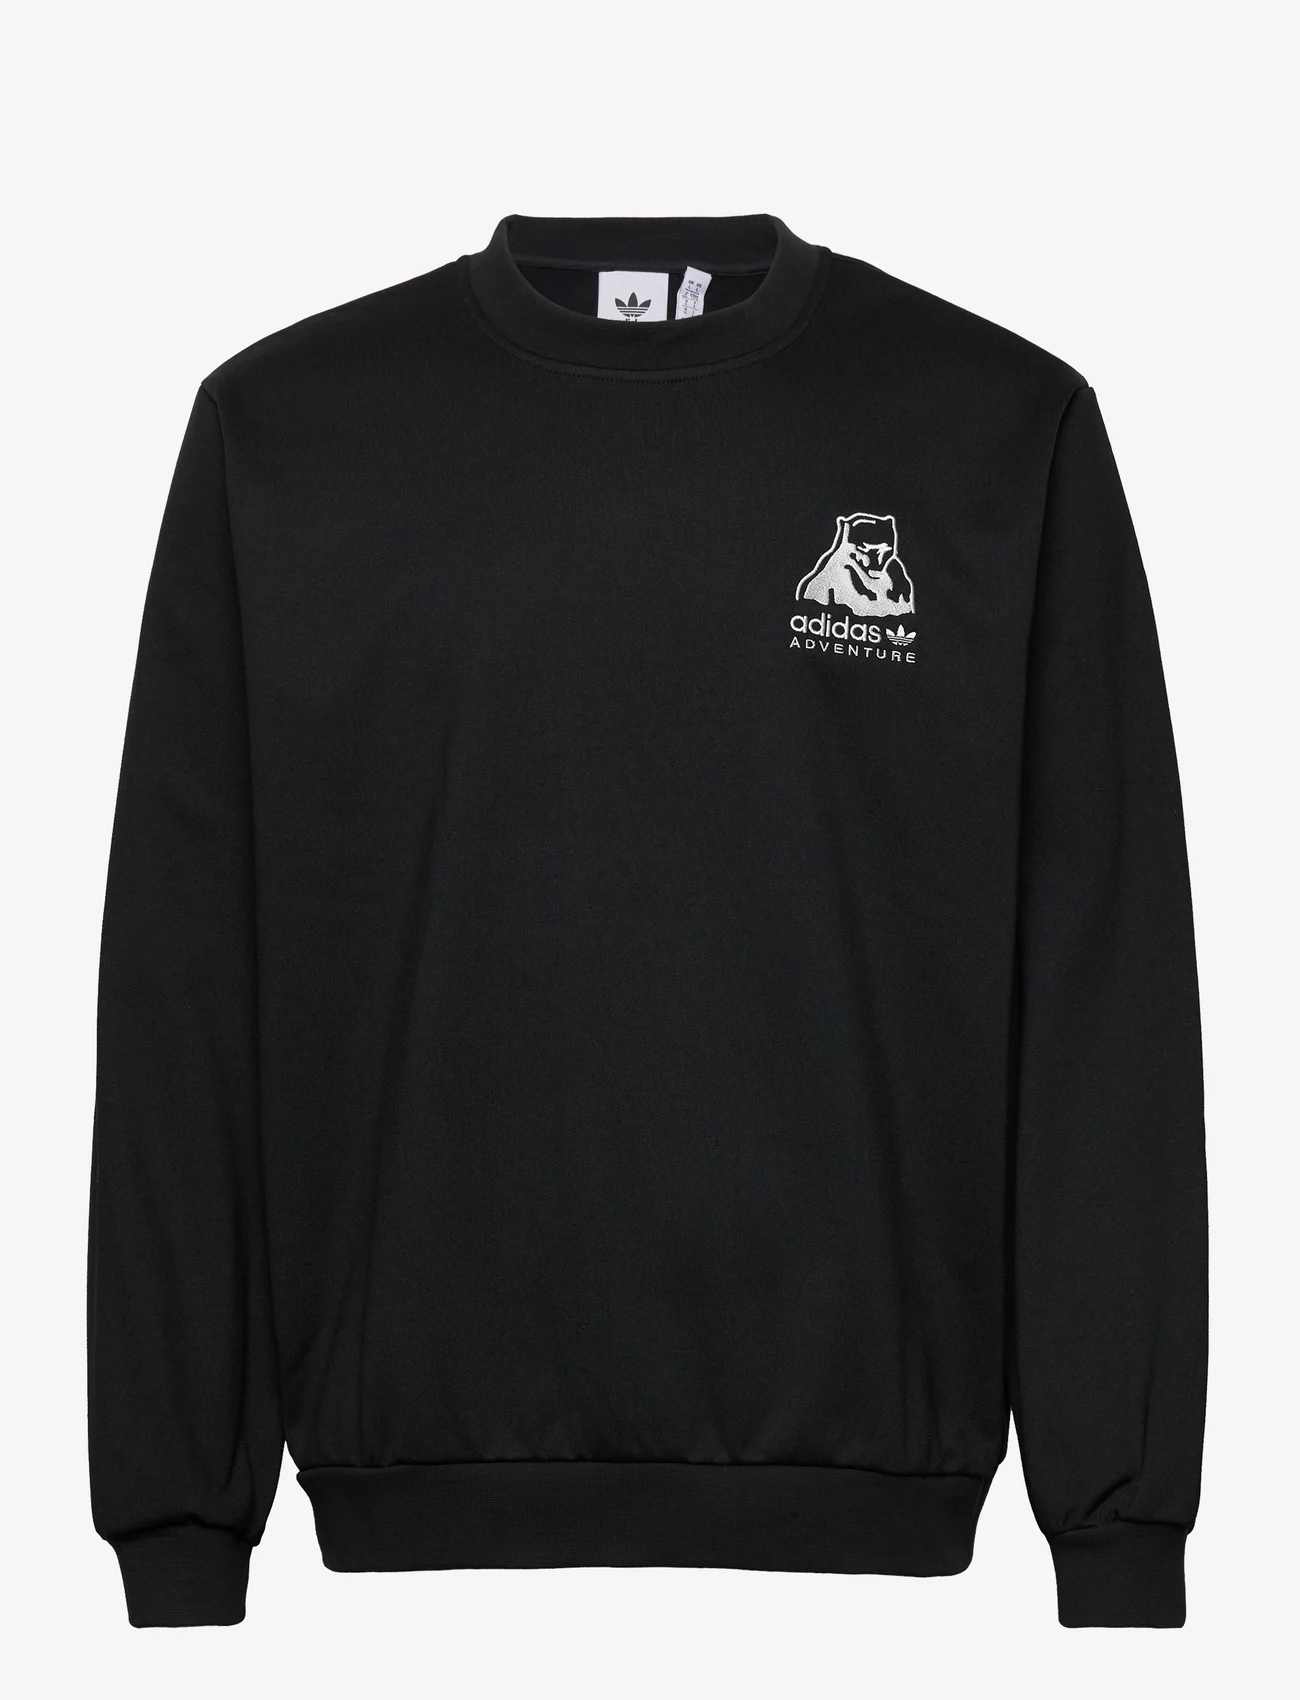 adidas Originals - adidas Adventure Winter Crewneck Sweatshirt - joggingbroek - black - 0